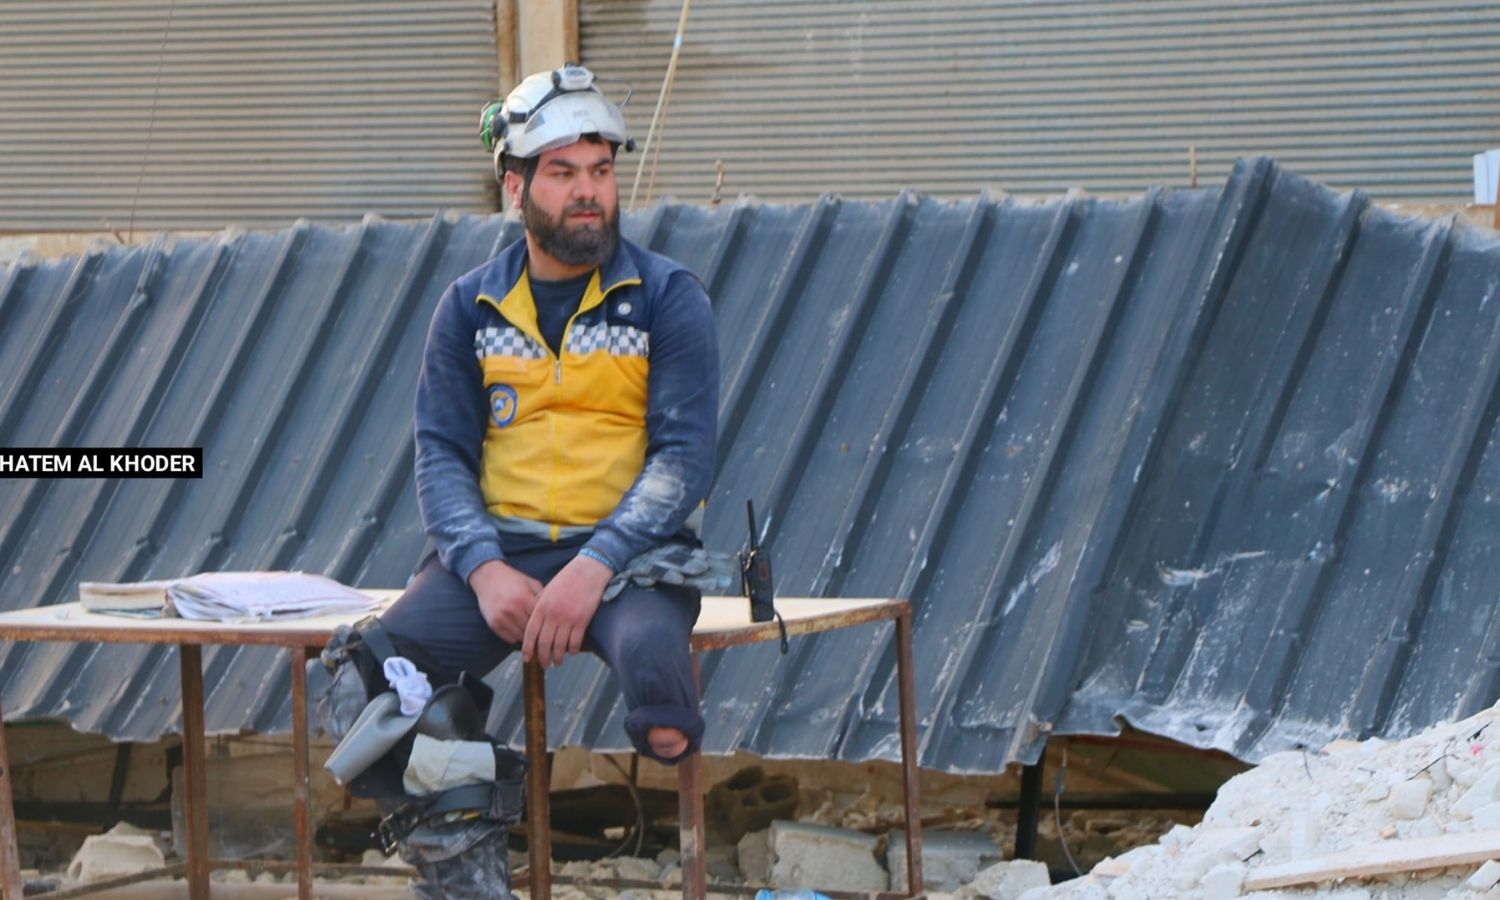 المتطوع في "الدفاع المدني السوري" حسن الطلفاح يجلس وبجانبه طرفه الاصطناعي للراحة بعد عمليات إنقاذ العالقين تحت الأنقاض إثر الزلزال بريف إدلب_12 من شباط 2023 (حاتم الخضر/ فيس بوك)